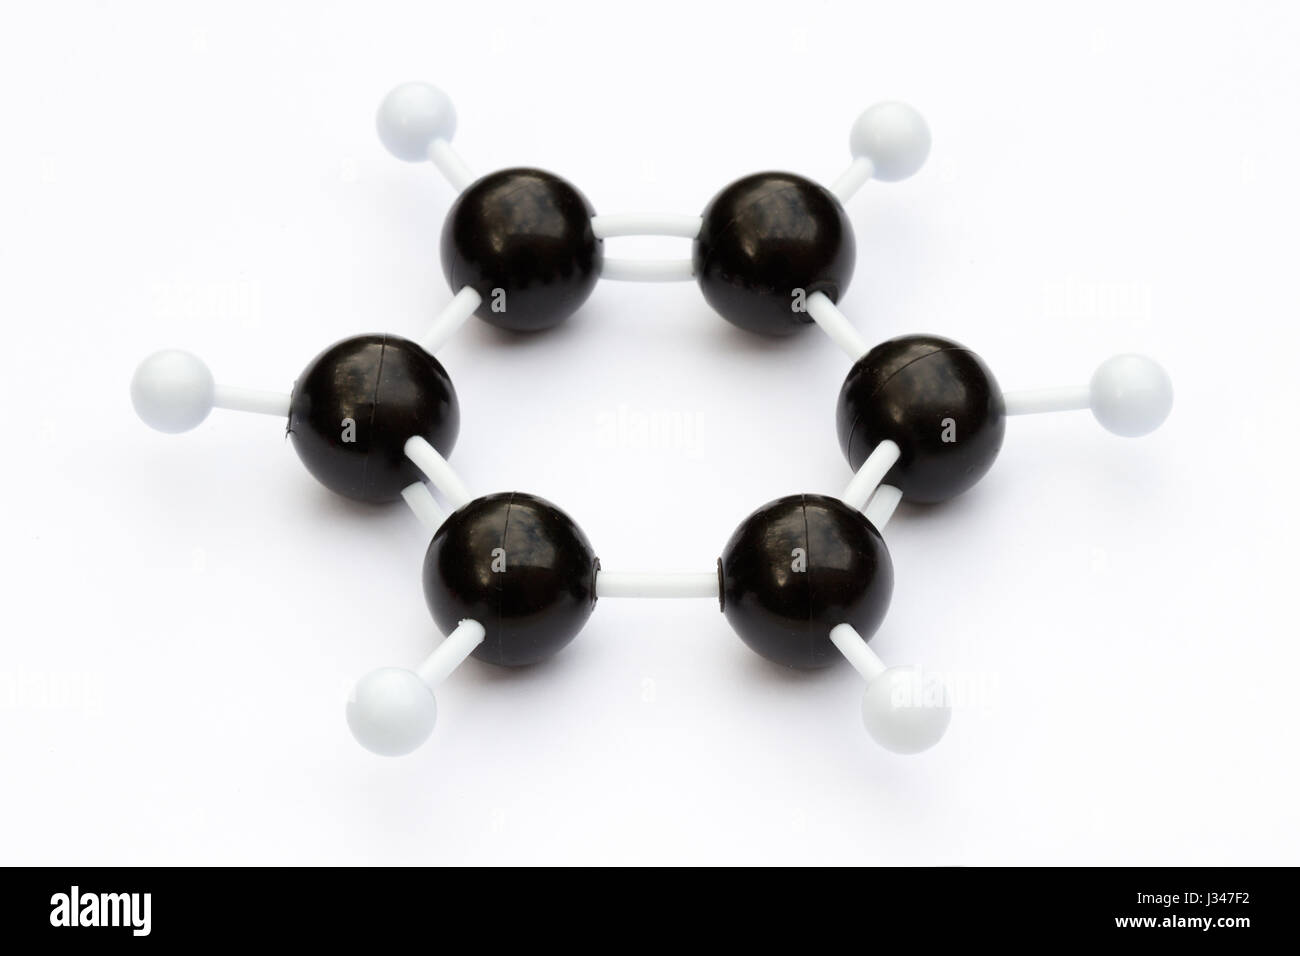 Balle en plastique et le bâton, modèle d'une molécule de benzène (C6H6) sur un fond blanc. La molécule est illustré avec kekule structure. Banque D'Images